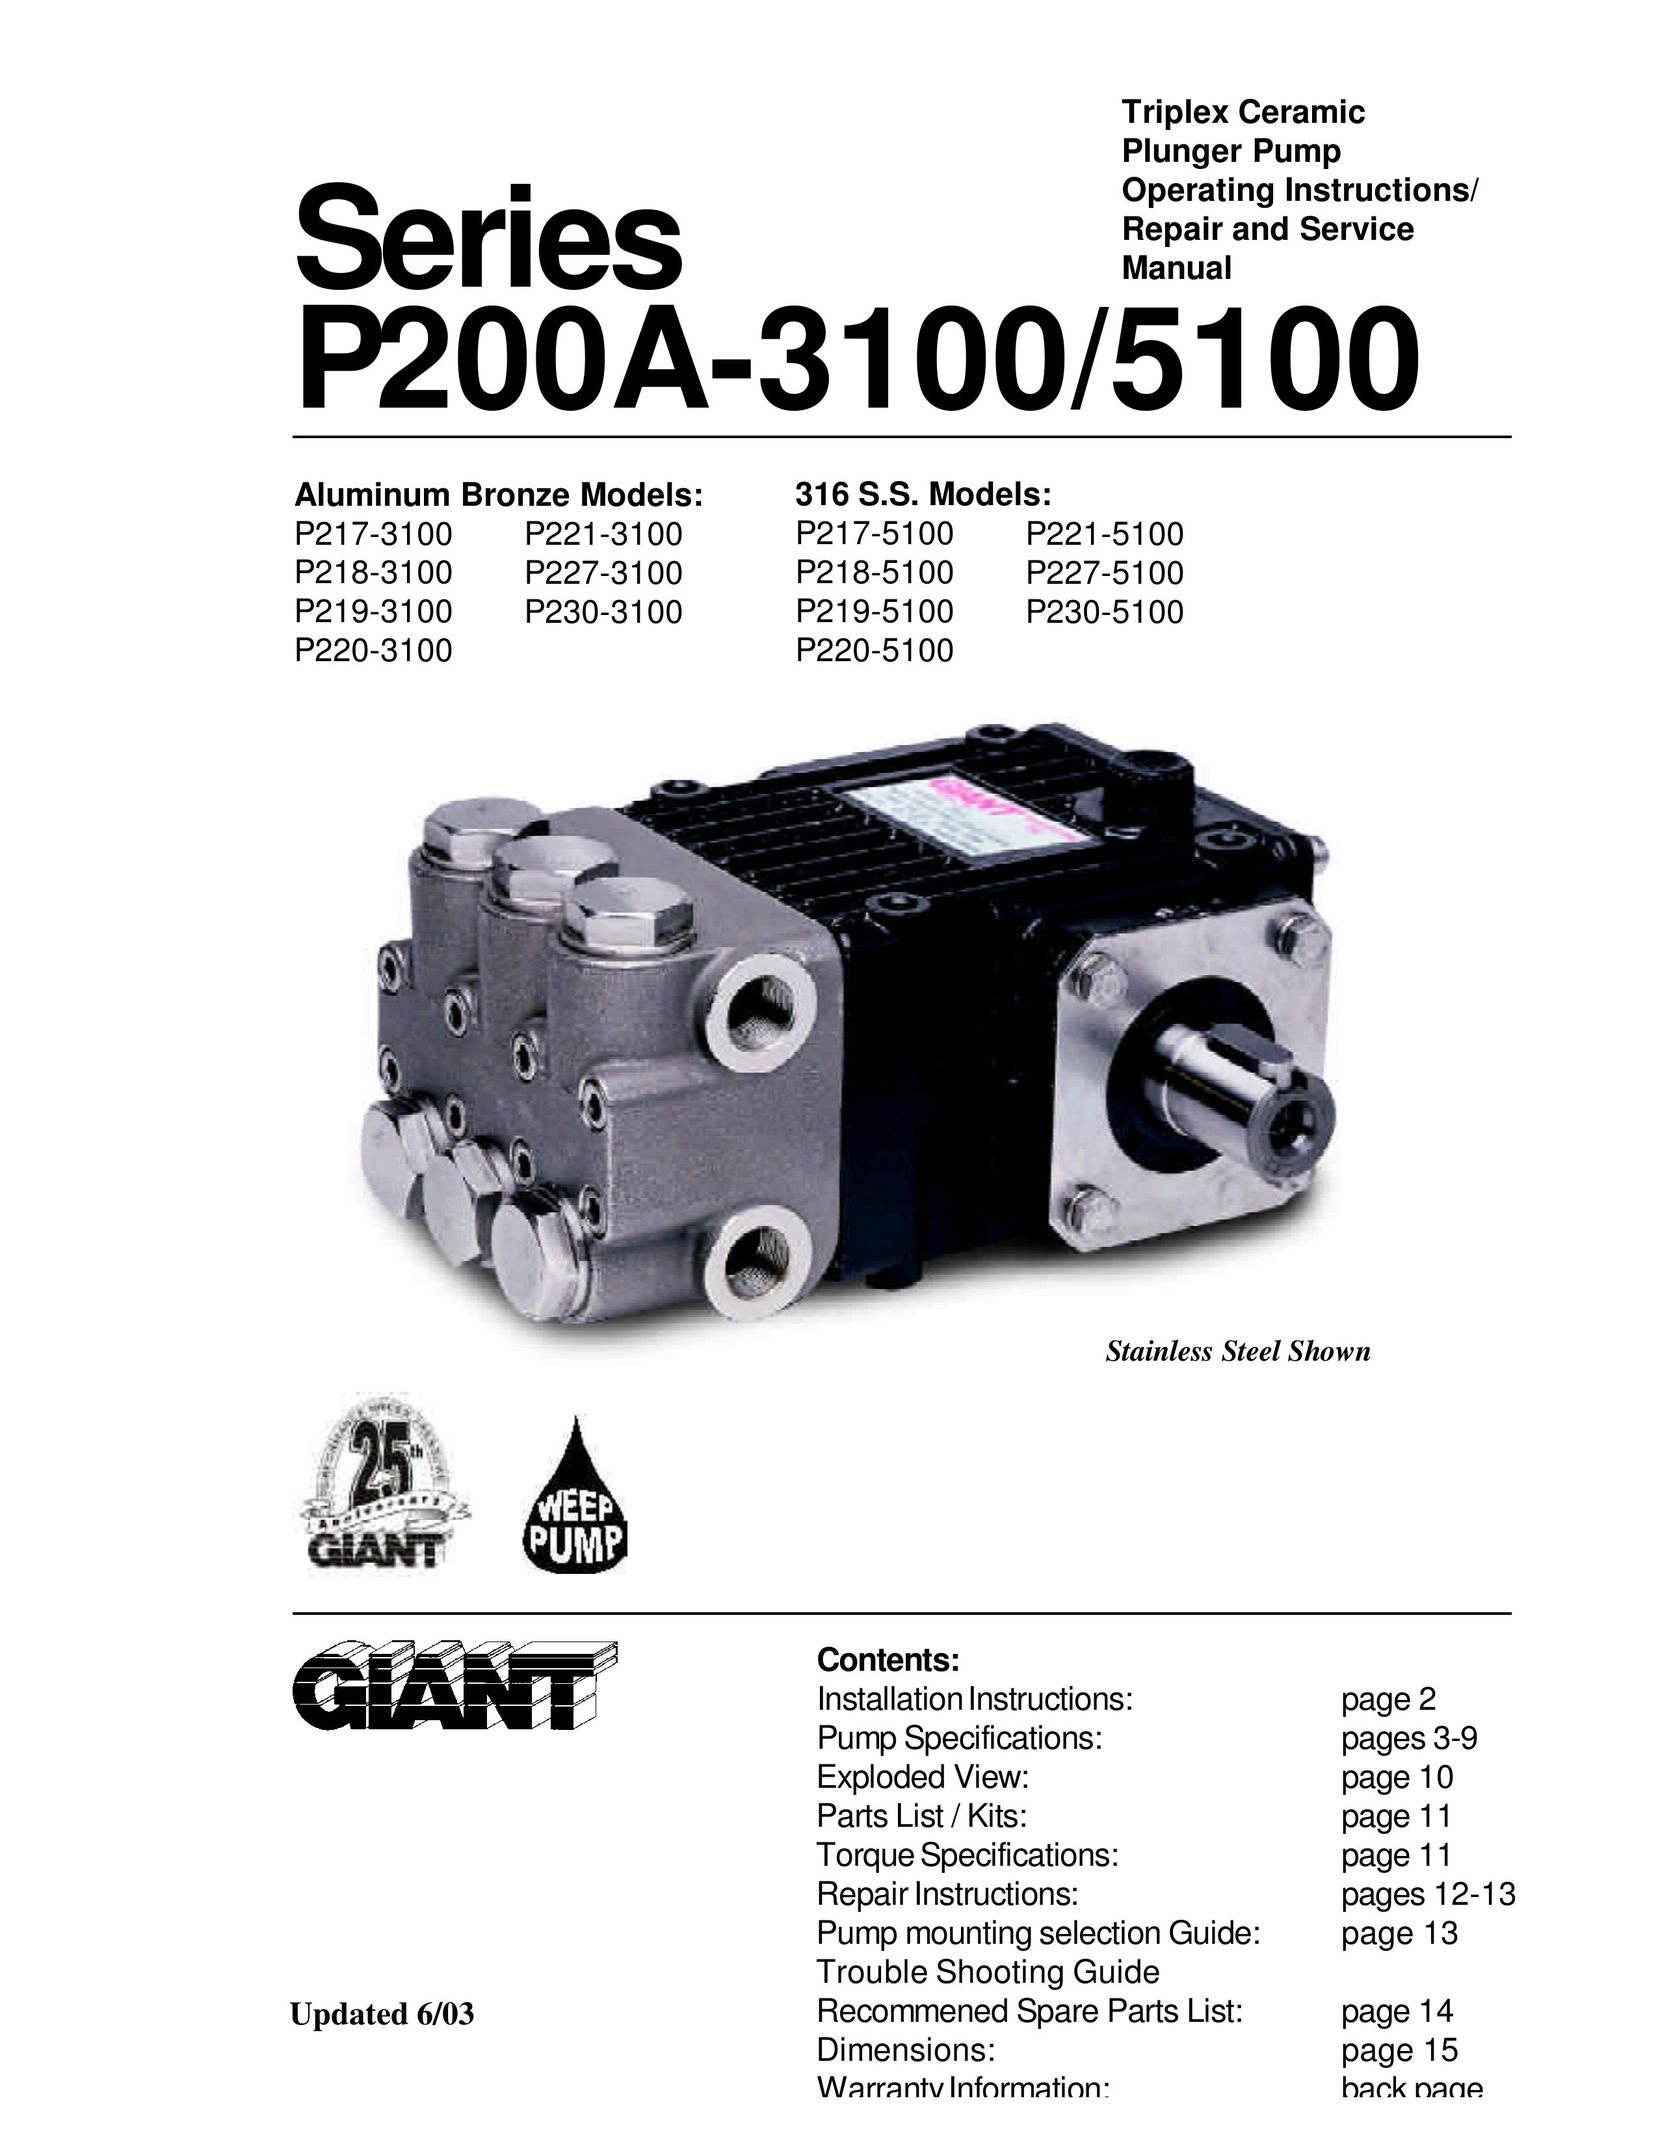 Giant P218-3100 Water Pump User Manual